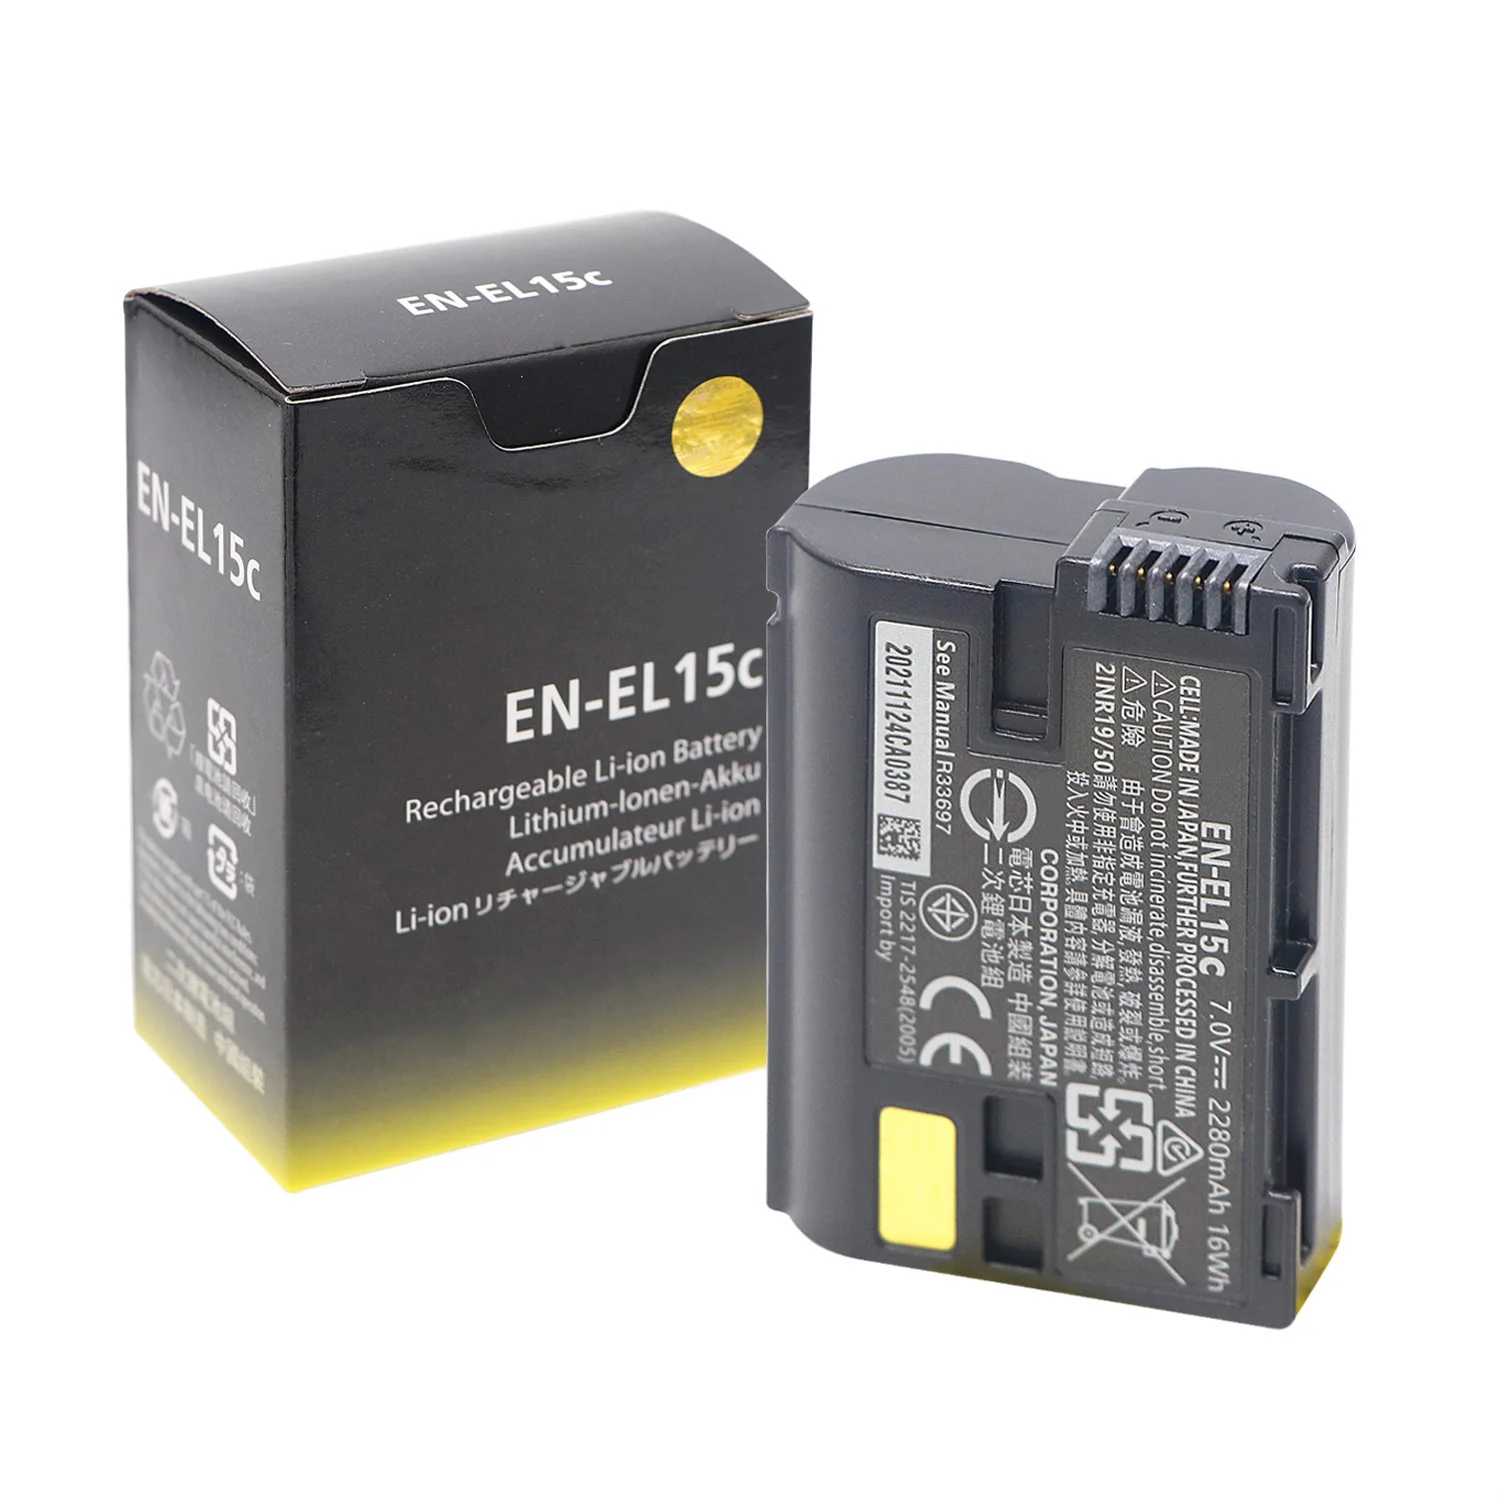 

High Quality EN-EL15C EL15 2280mAh Battery For Nikon Z5 Z6 Z6II Z7 Z7II D600 D610 D600E D750 D800 D800E D810 D7100 D7200 D7500